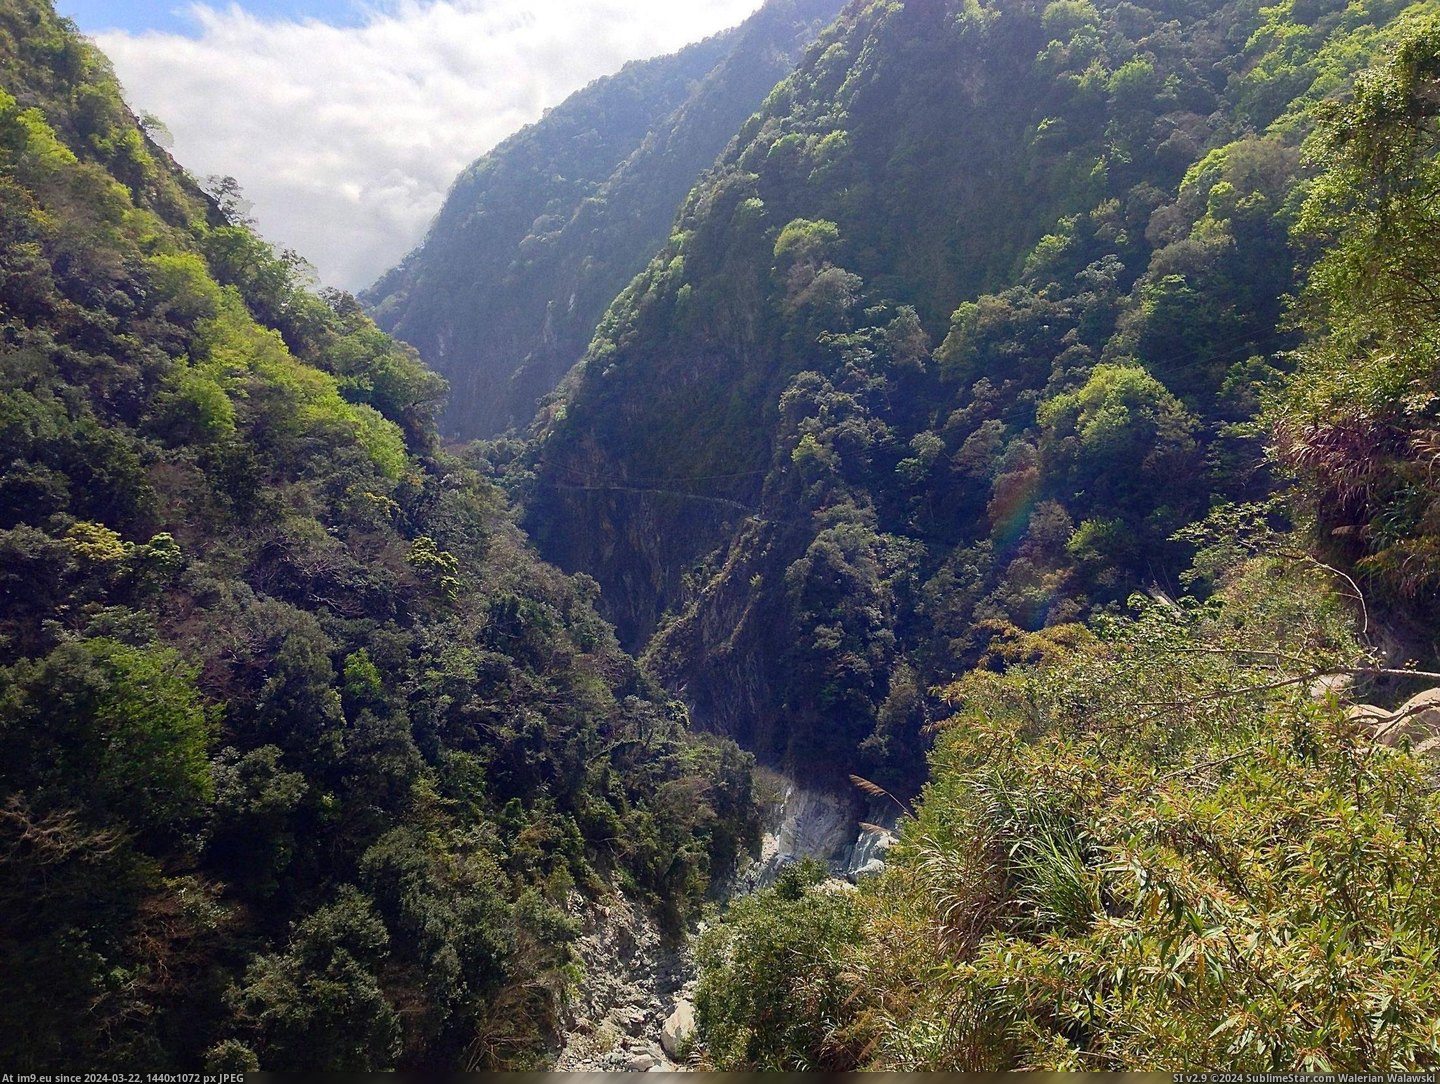 #Hiking #Taiwan #Taroko #Gorge [Earthporn] OC- Taken while hiking in Taroko Gorge, Taiwan. [2203 x 1652] Pic. (Bild von album My r/EARTHPORN favs))